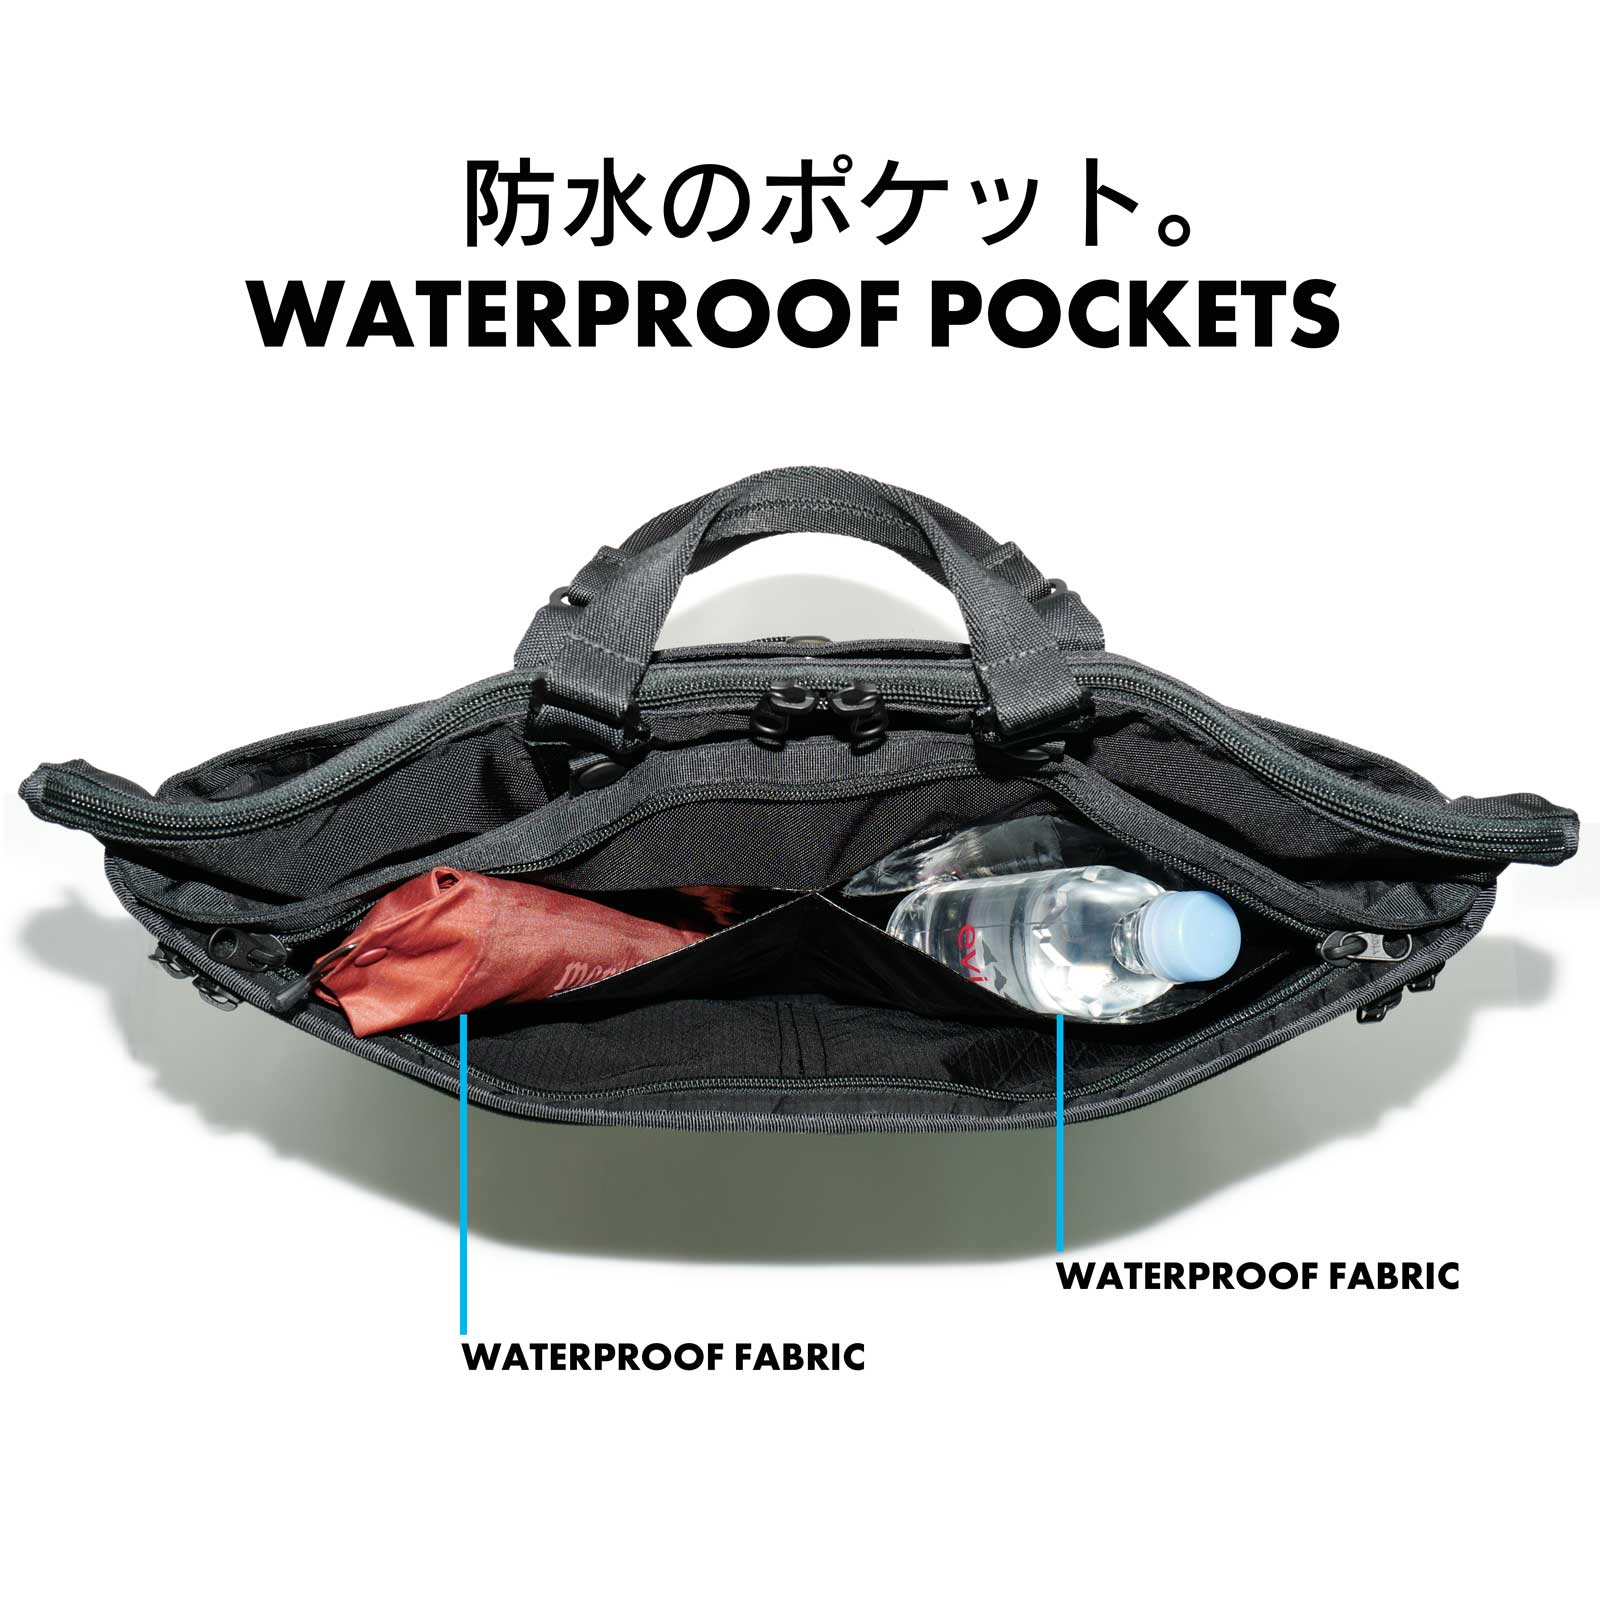 傘やペットボトルの収納に最適な防水ポケットを装備したB4ビジネスバッグ